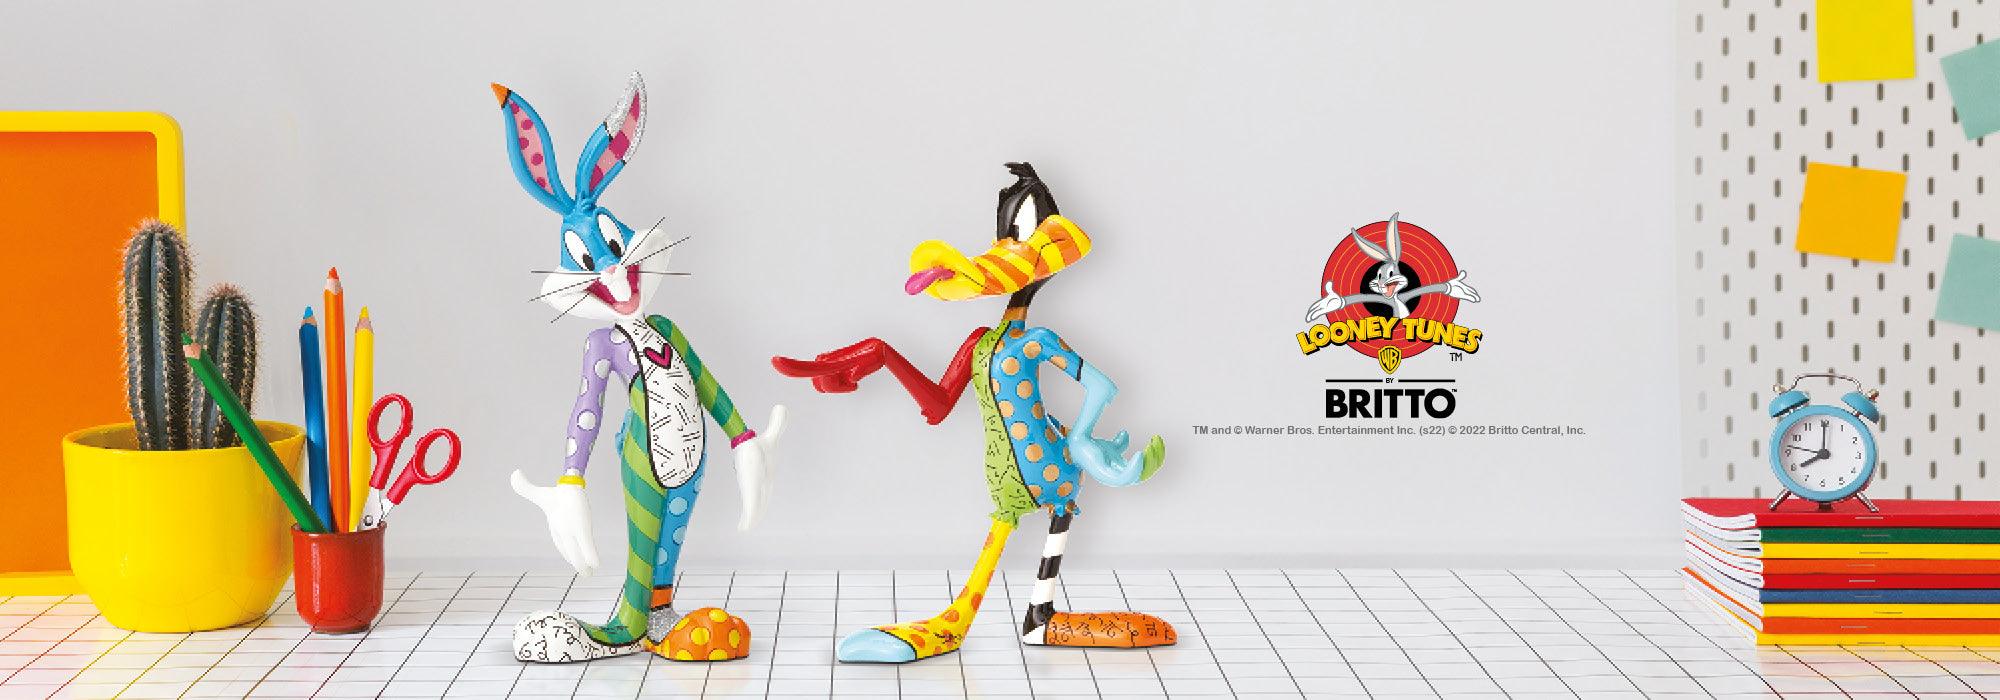 Looney Tunes by Romero Britto | Enesco Gift Shop